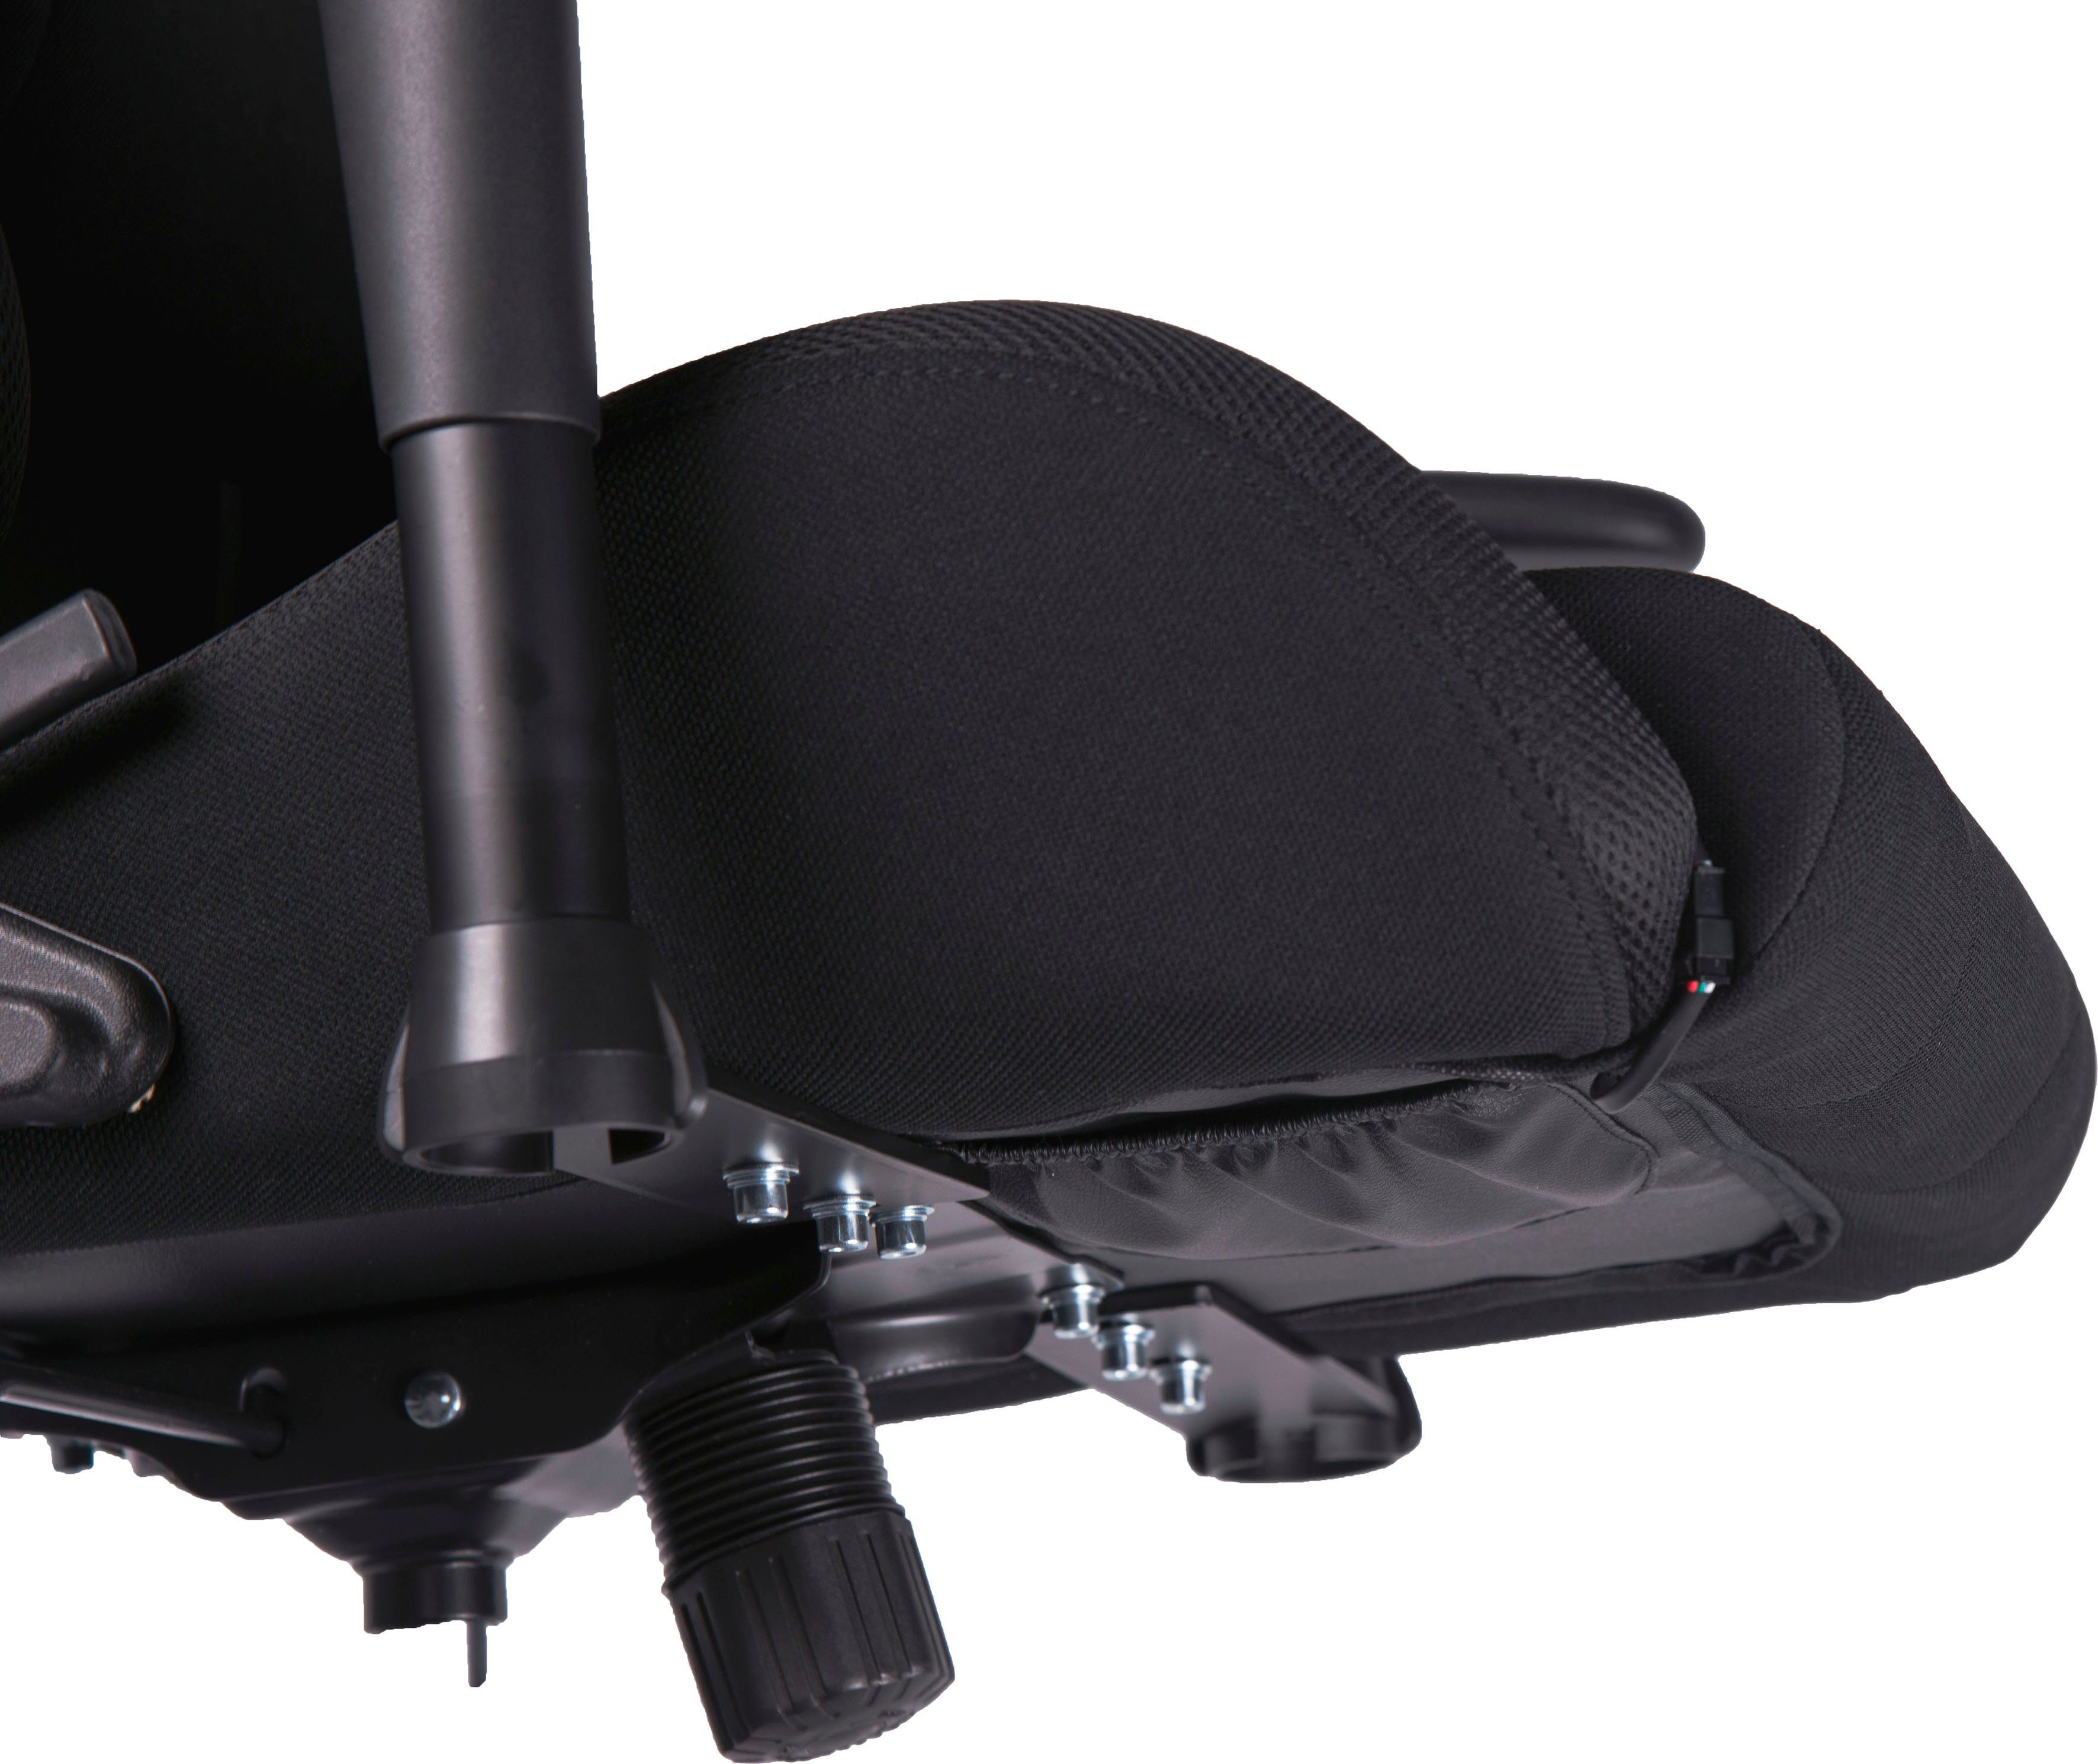 Gaming-Stuhl RGB Chair Gaming REGYS Speedlink